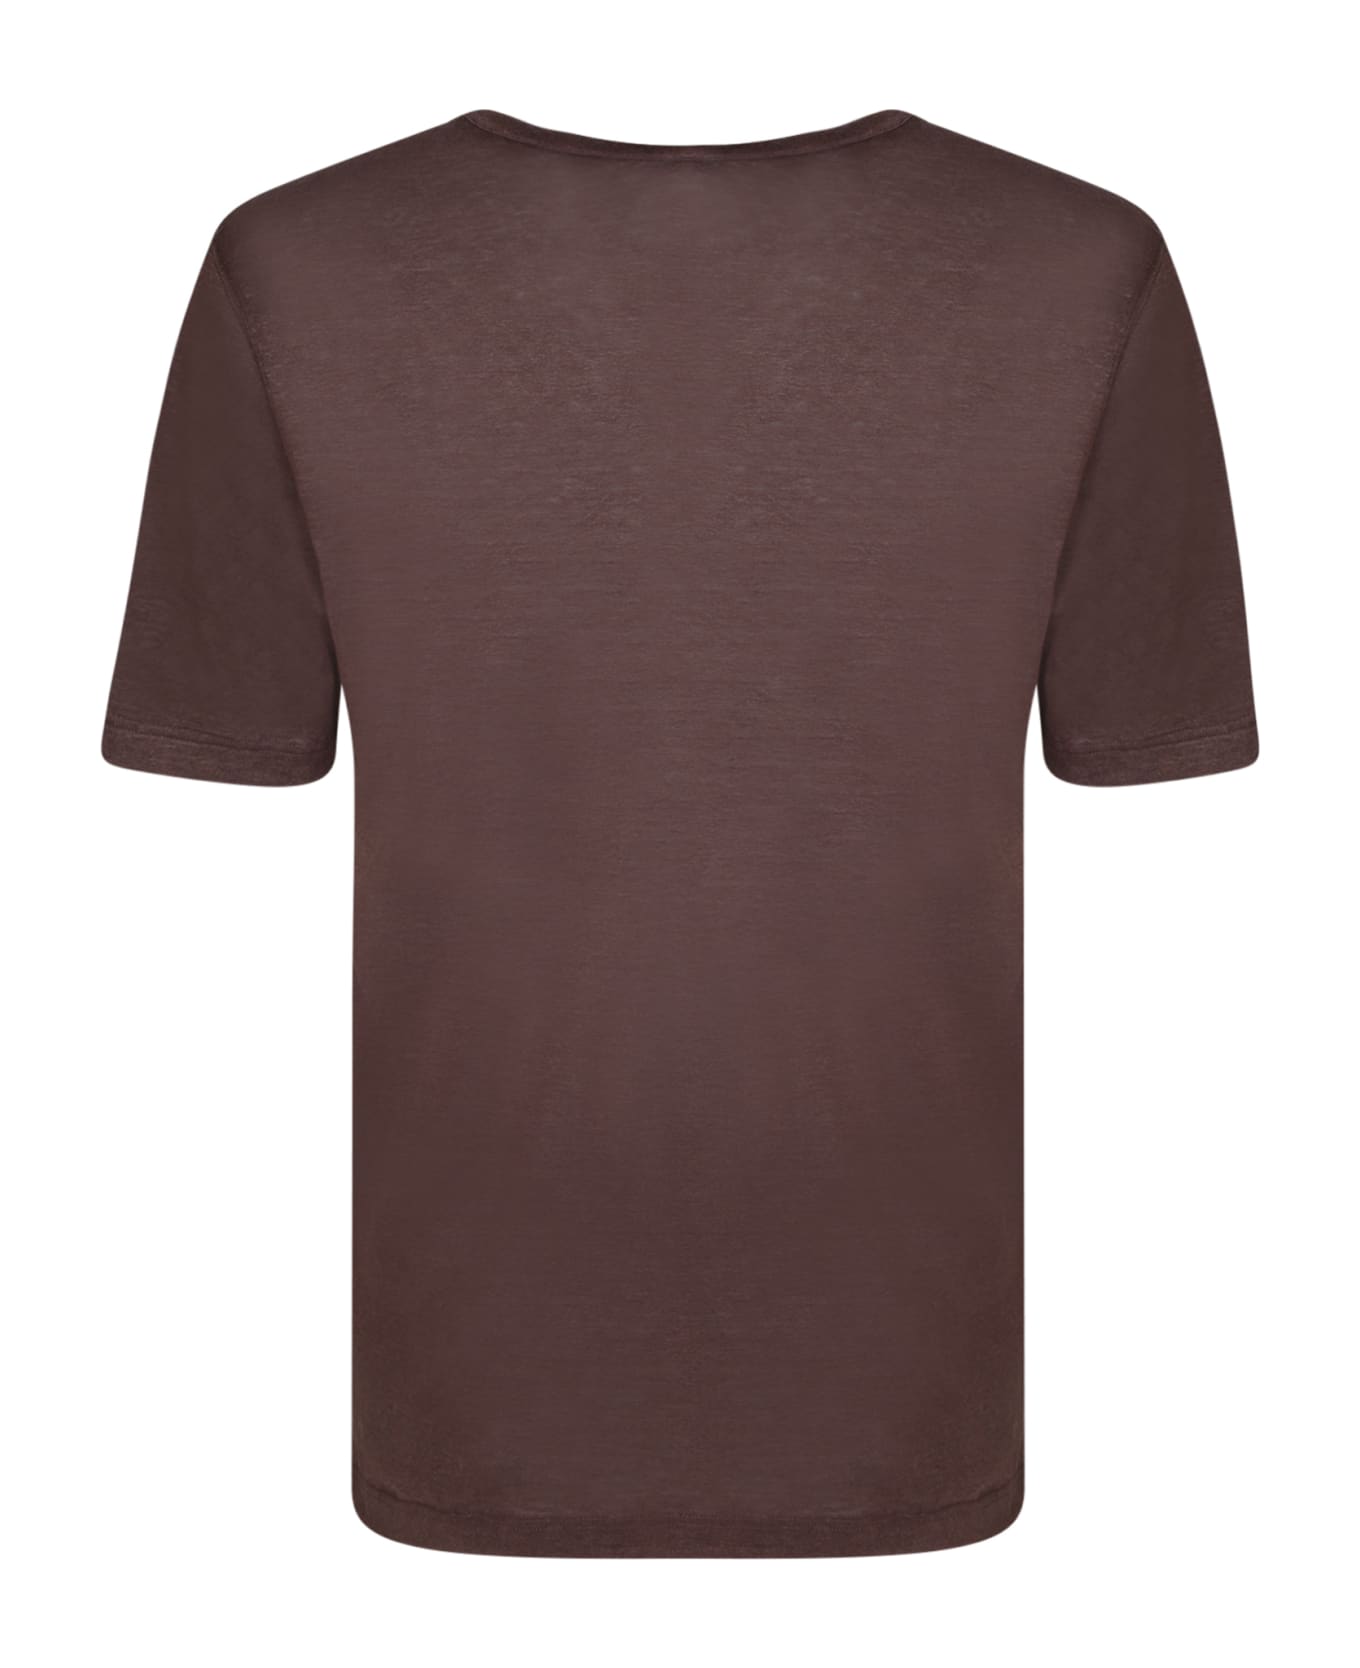 Lardini Dark Brown T-shirt - Brown